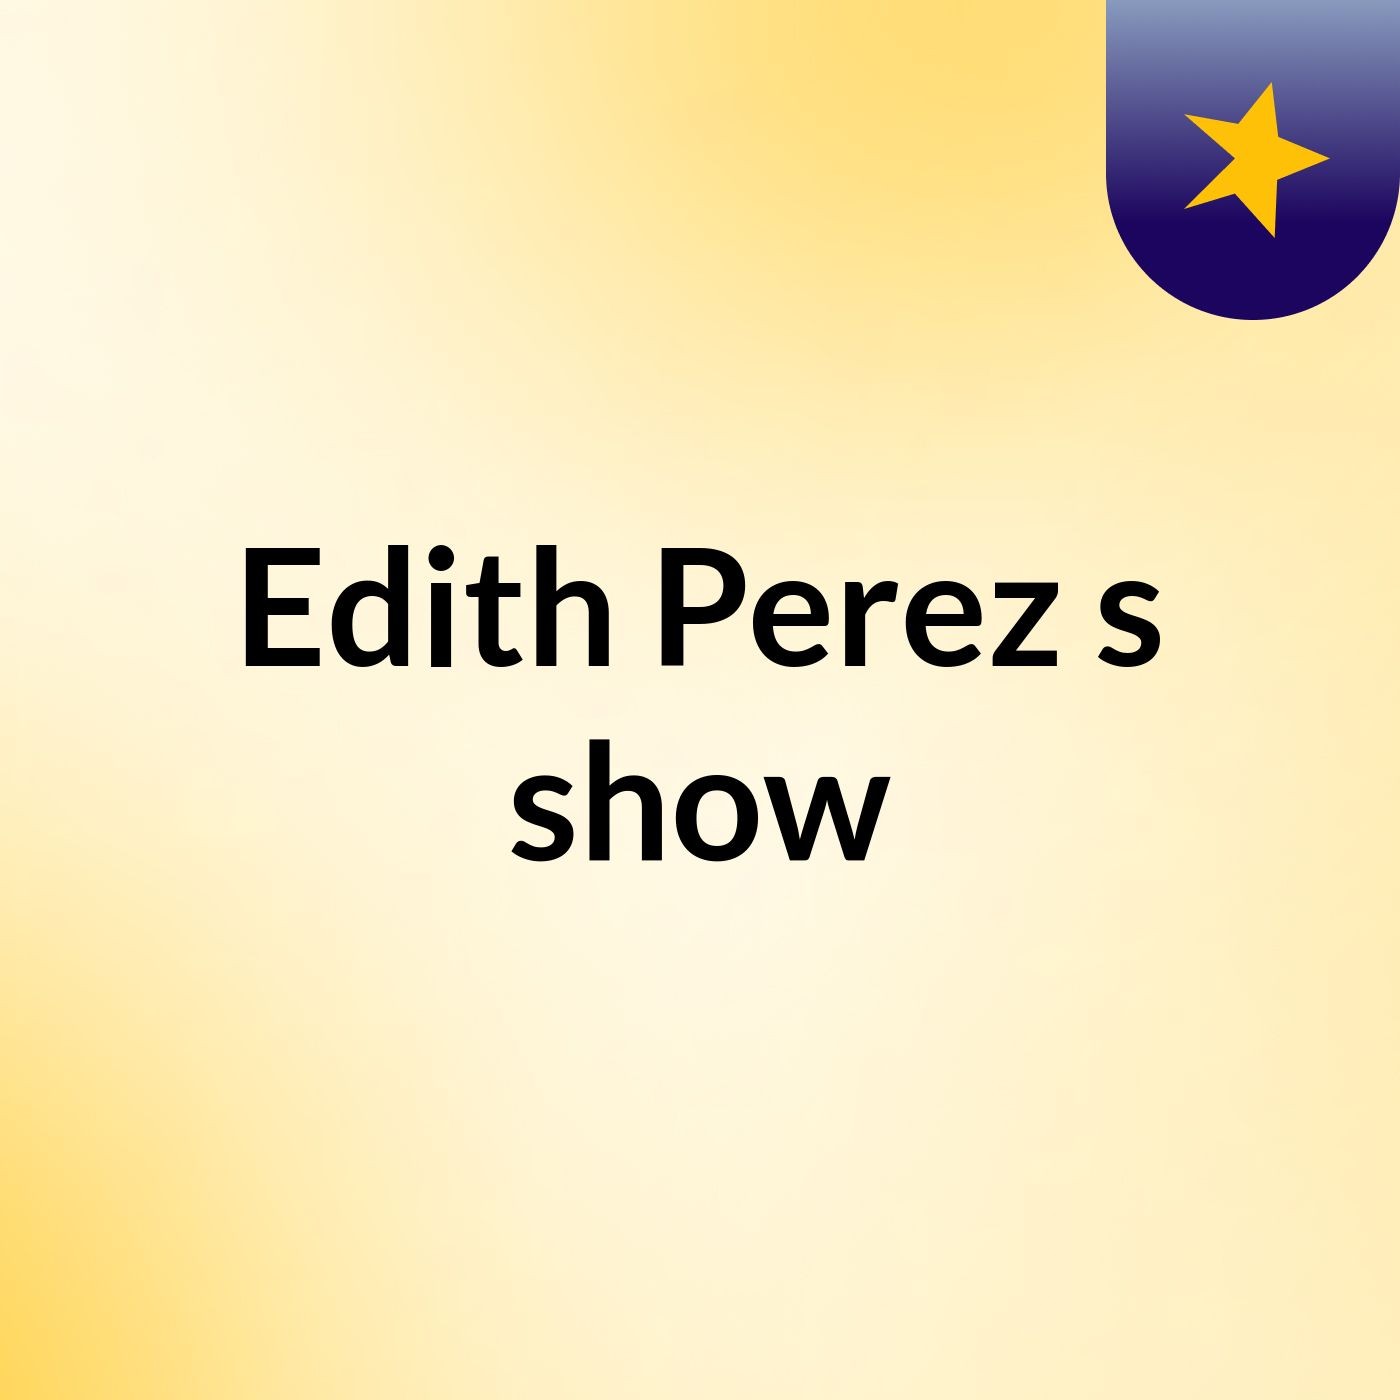 Edith Perez's show